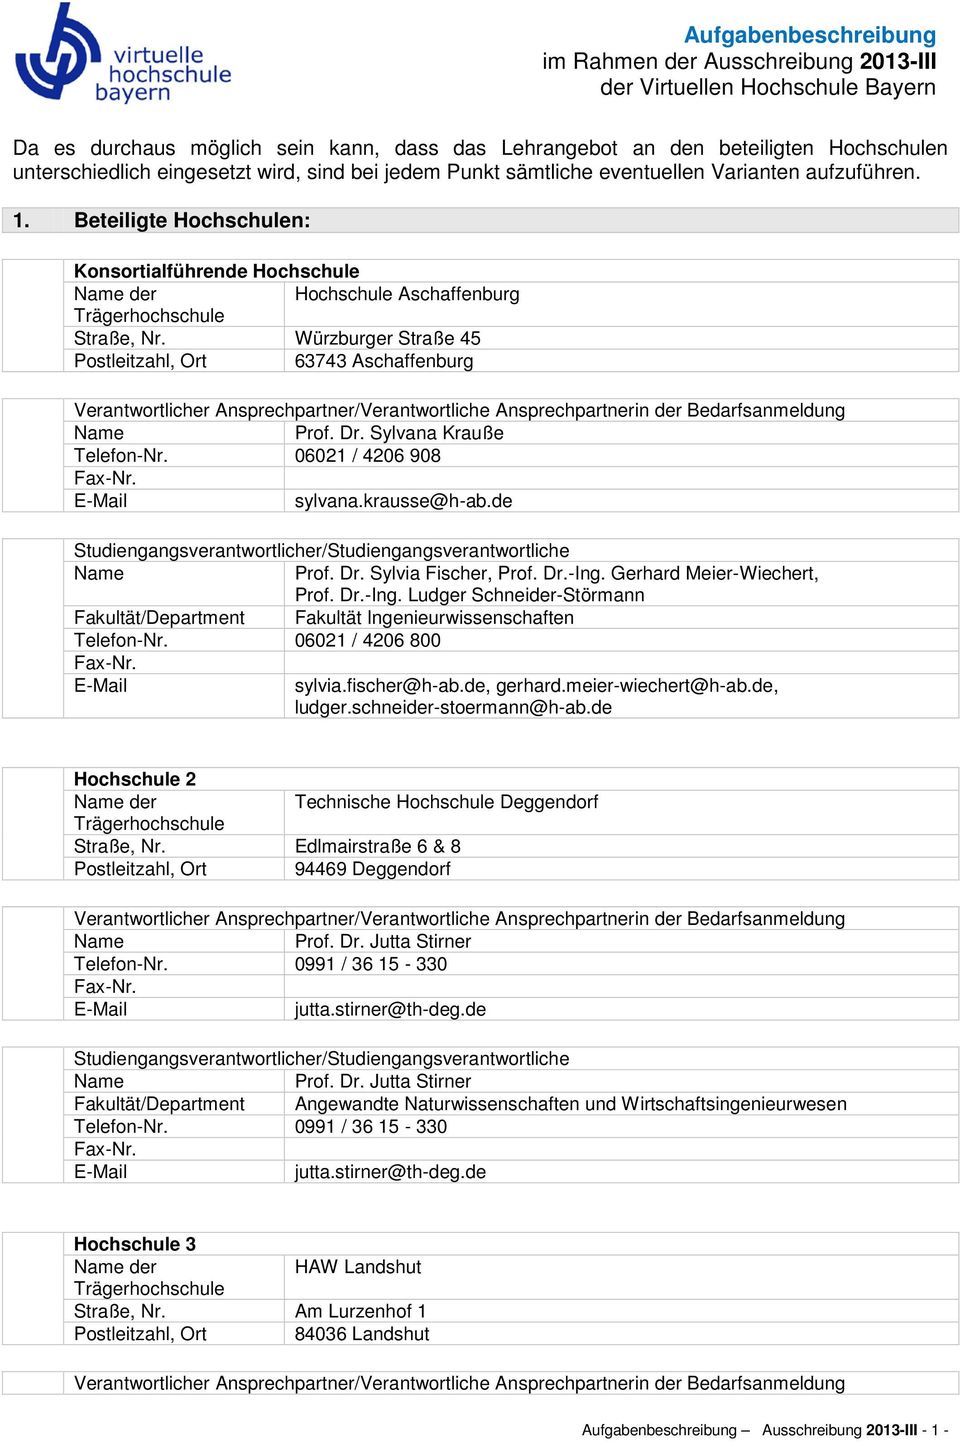 Würzburger Straße 45 Postleitzahl, Ort 63743 Aschaffenburg Verantwortlicher Ansprechpartner/Verantwortliche Ansprechpartnerin der Bedarfsanmeldung Prof. Dr. Sylvana Krauße Telefon-Nr.